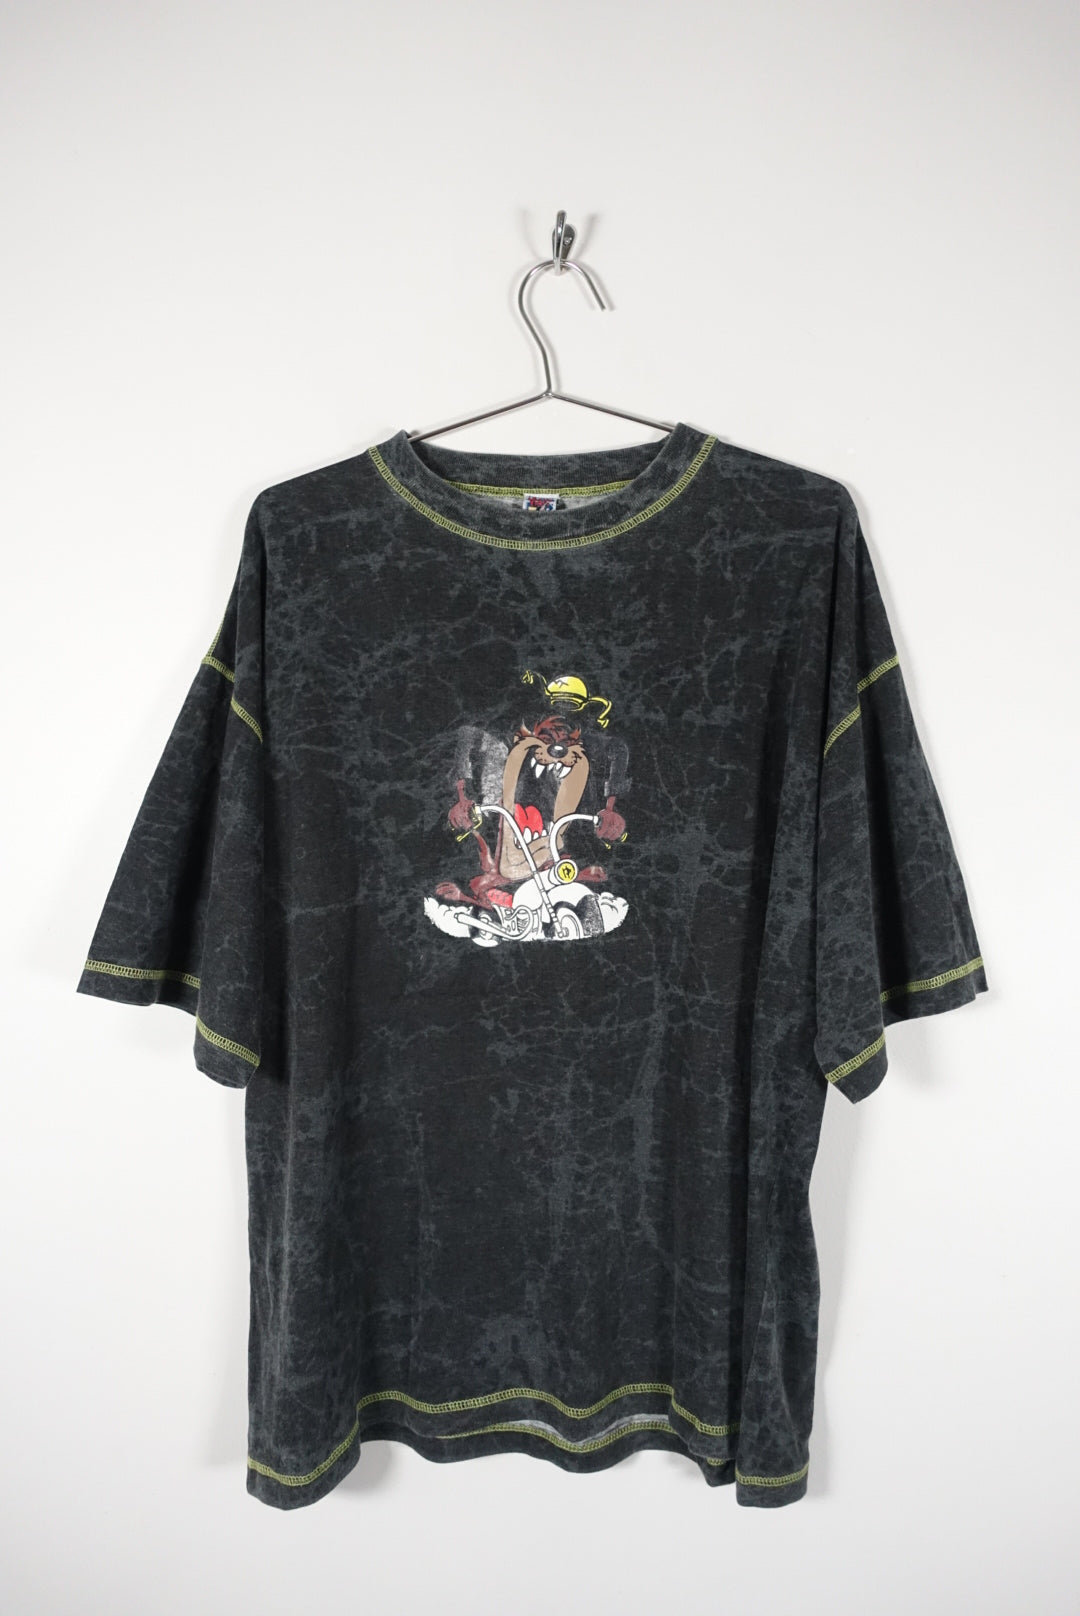 Vintage 1996 Taz Warner Bros Acid Wash T Shirt